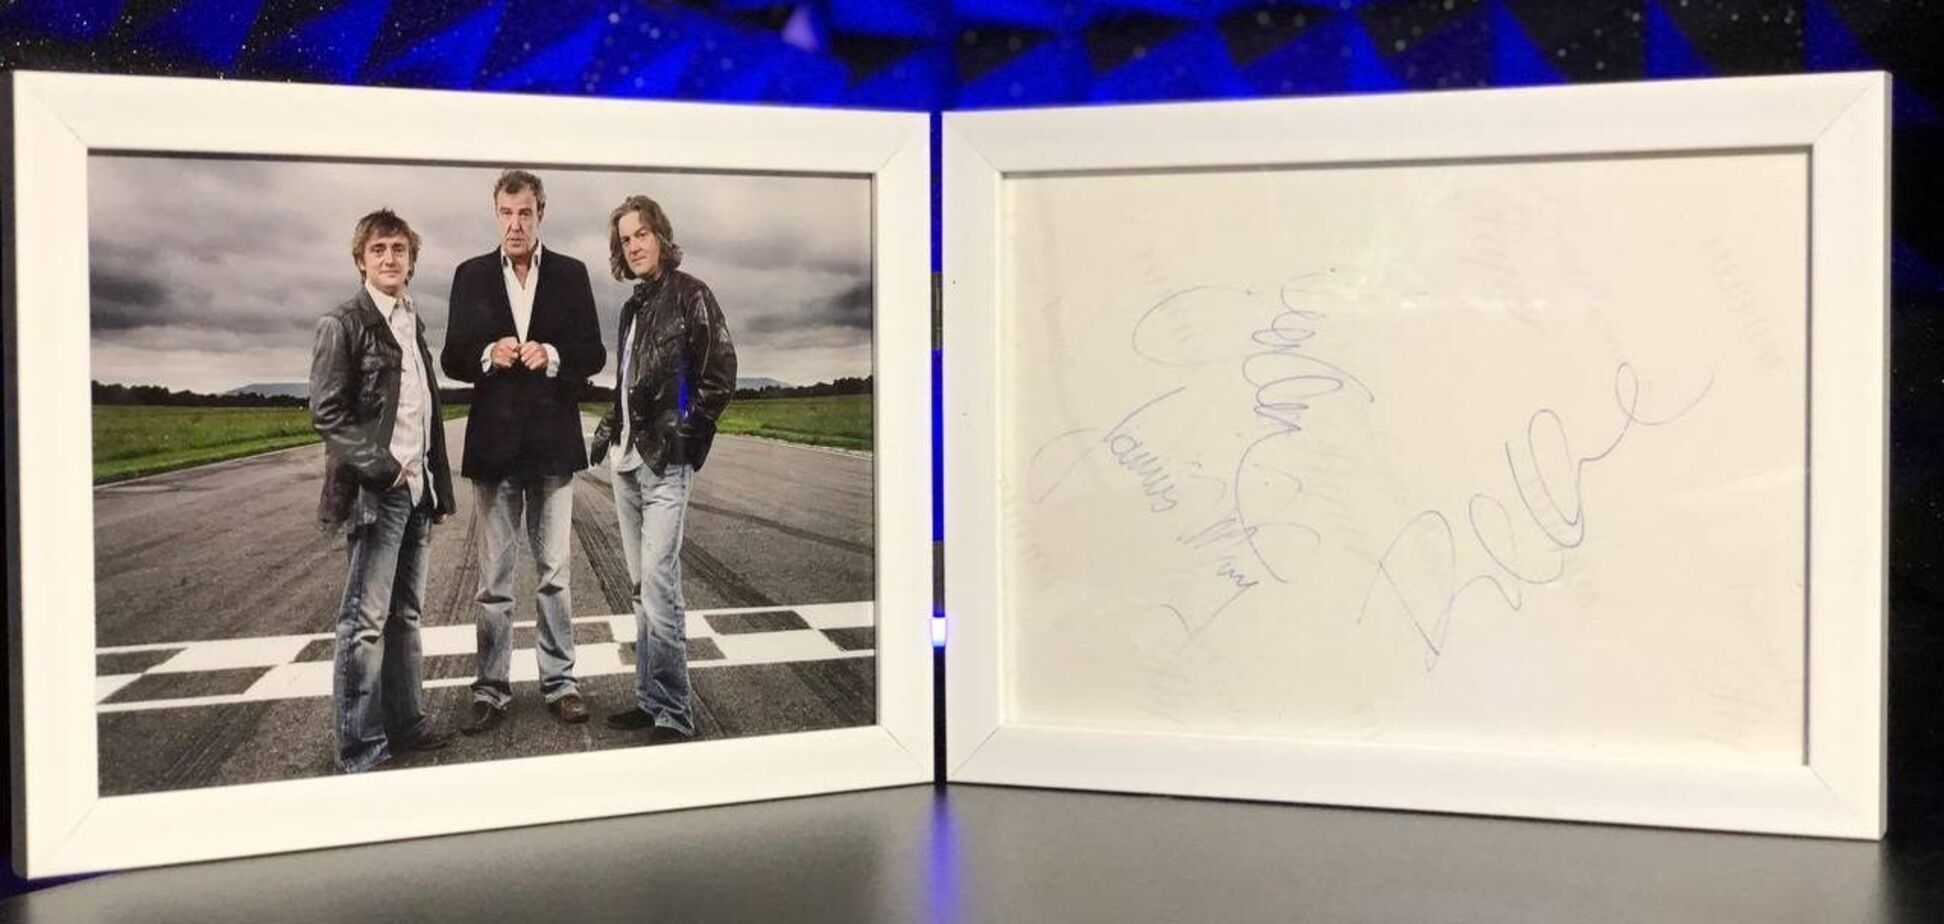 Автографы звезд британской программы Top Gear будут выставлены на аукцион, чтобы помочь ВСУ